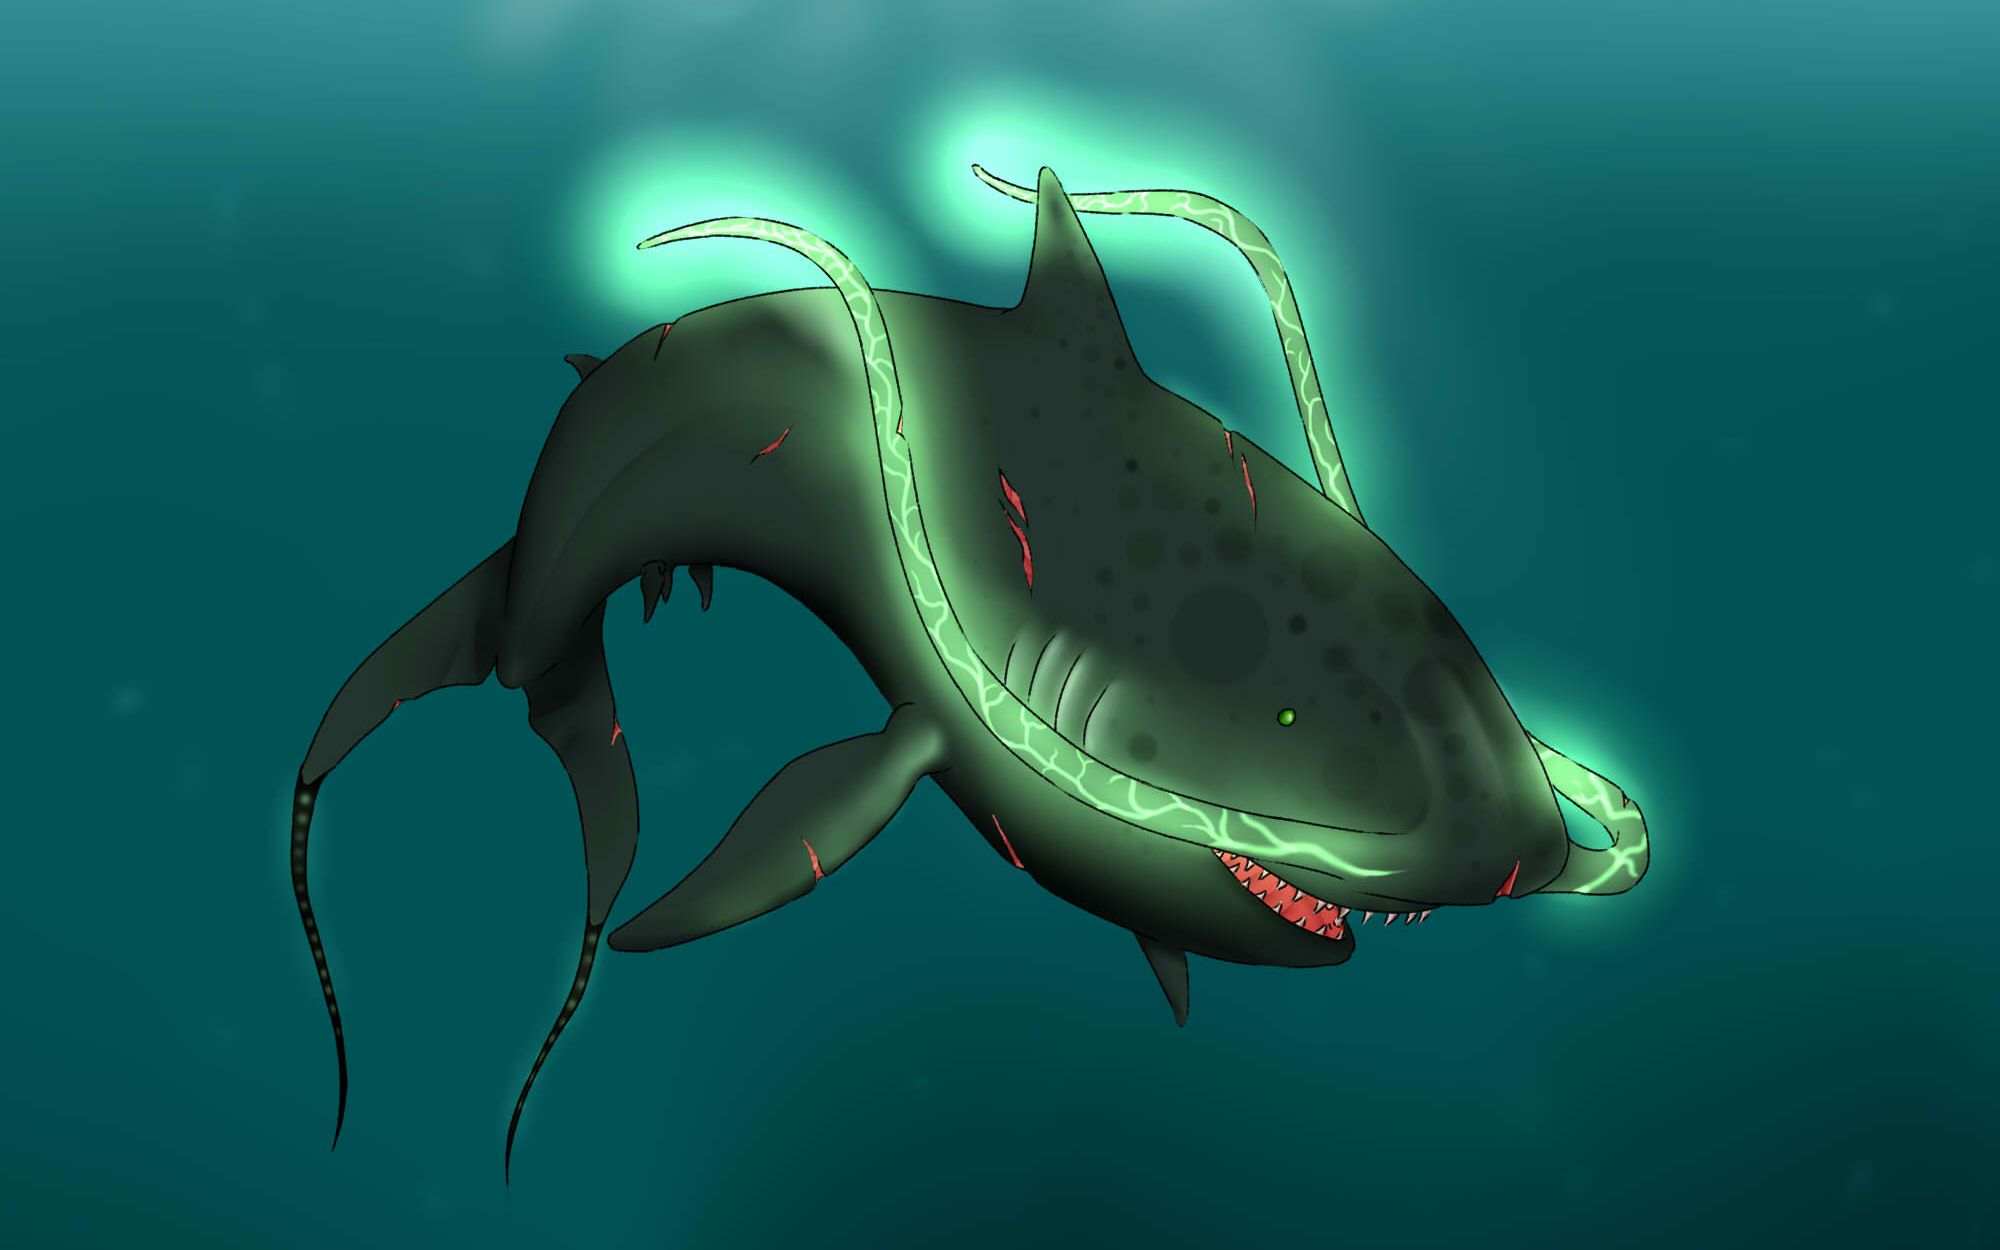 【莱斯利】深海惊魂:身上长触须的异形鲨鱼!